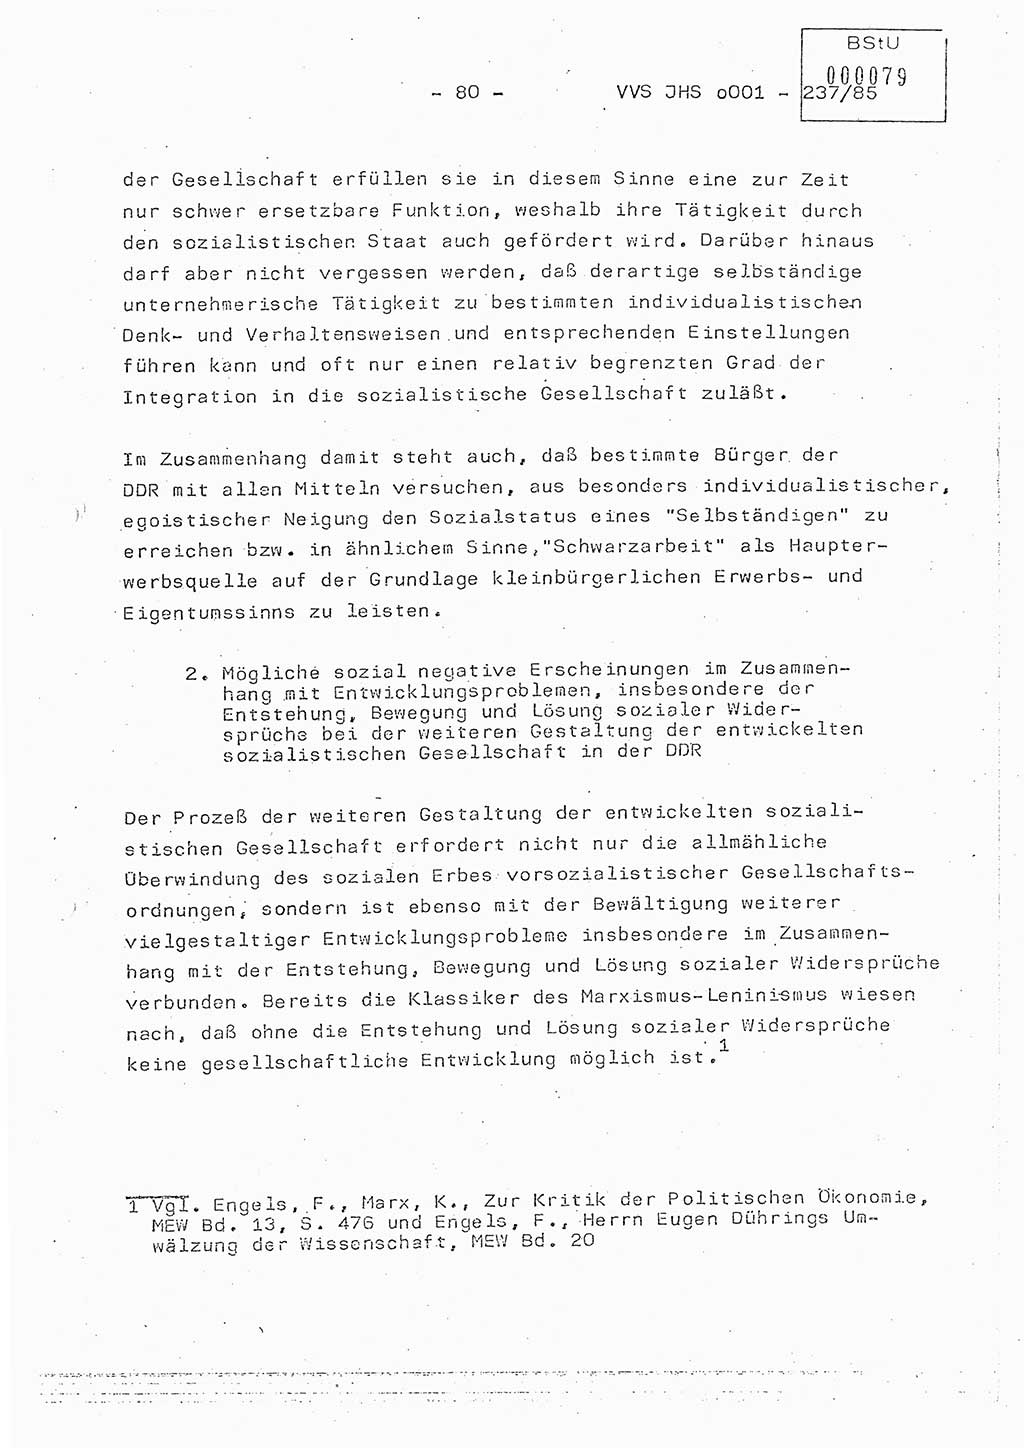 Dissertation Oberstleutnant Peter Jakulski (JHS), Oberstleutnat Christian Rudolph (HA Ⅸ), Major Horst Böttger (ZMD), Major Wolfgang Grüneberg (JHS), Major Albert Meutsch (JHS), Ministerium für Staatssicherheit (MfS) [Deutsche Demokratische Republik (DDR)], Juristische Hochschule (JHS), Vertrauliche Verschlußsache (VVS) o001-237/85, Potsdam 1985, Seite 80 (Diss. MfS DDR JHS VVS o001-237/85 1985, S. 80)